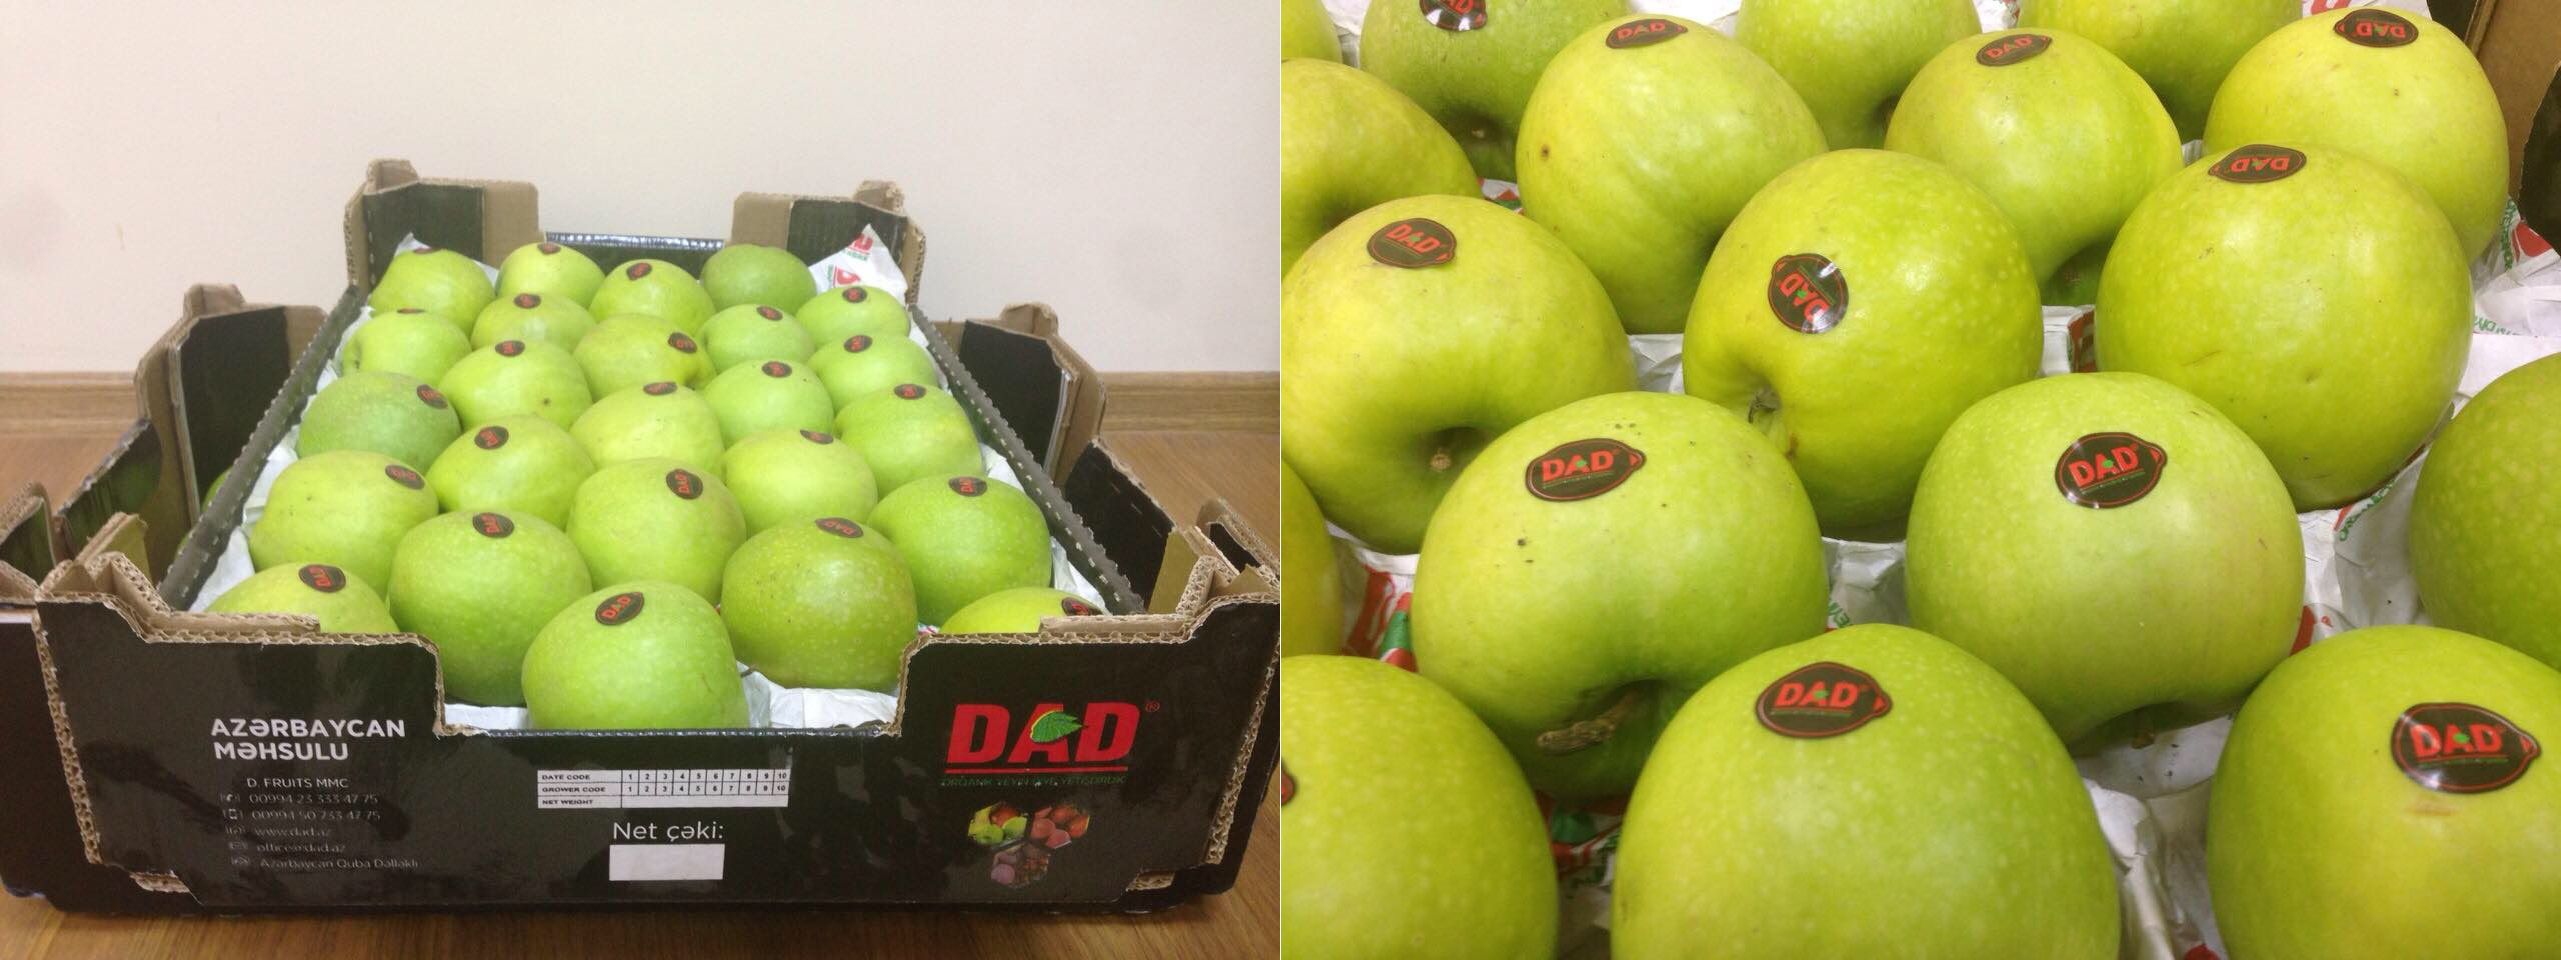 По факту незаконного импорта азербайджанских яблок в Армению возбуждено уголовное дело